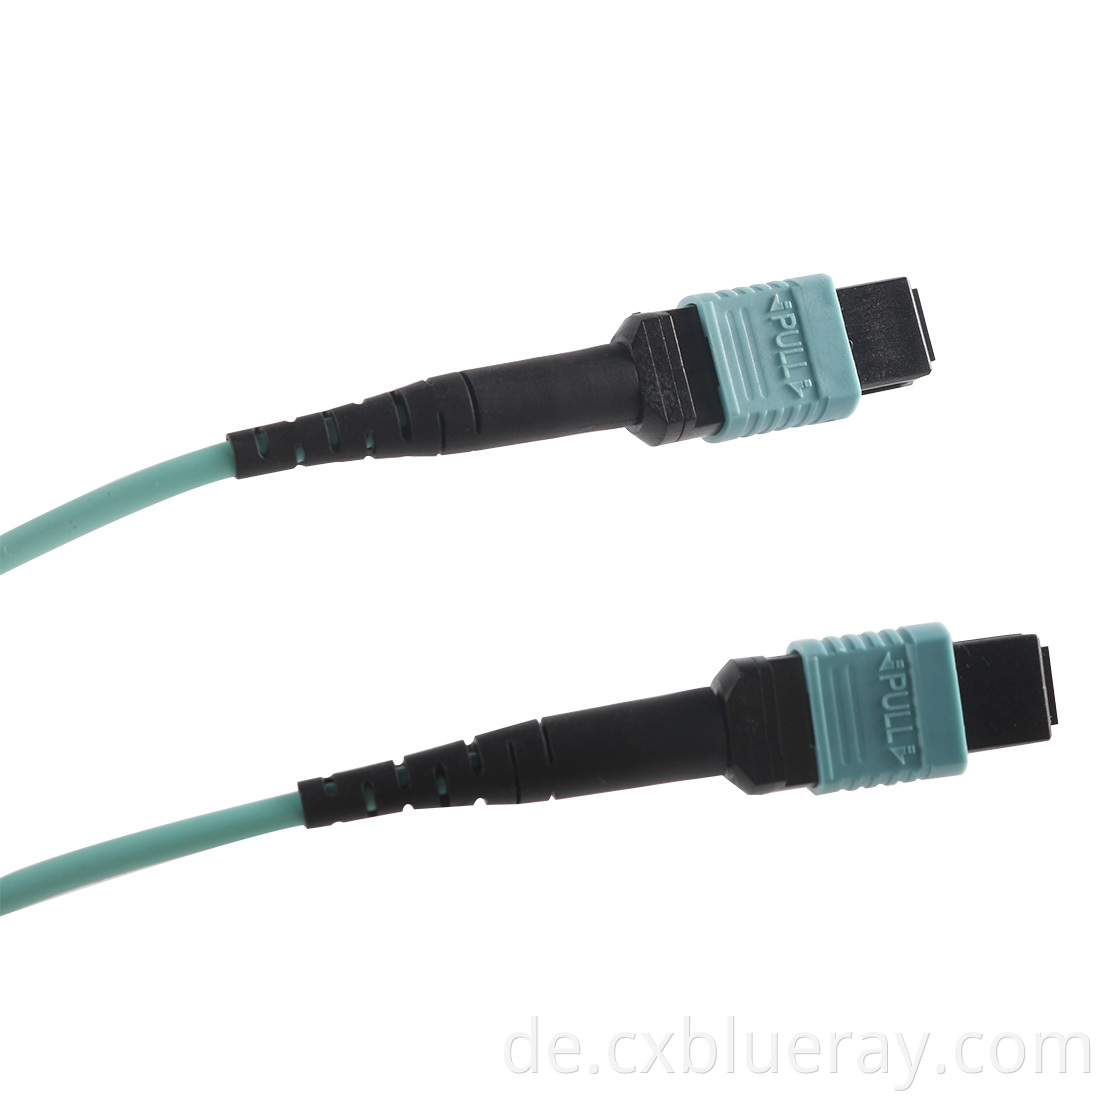 MPO-MPO 24fibers OM4 Trunk Cable